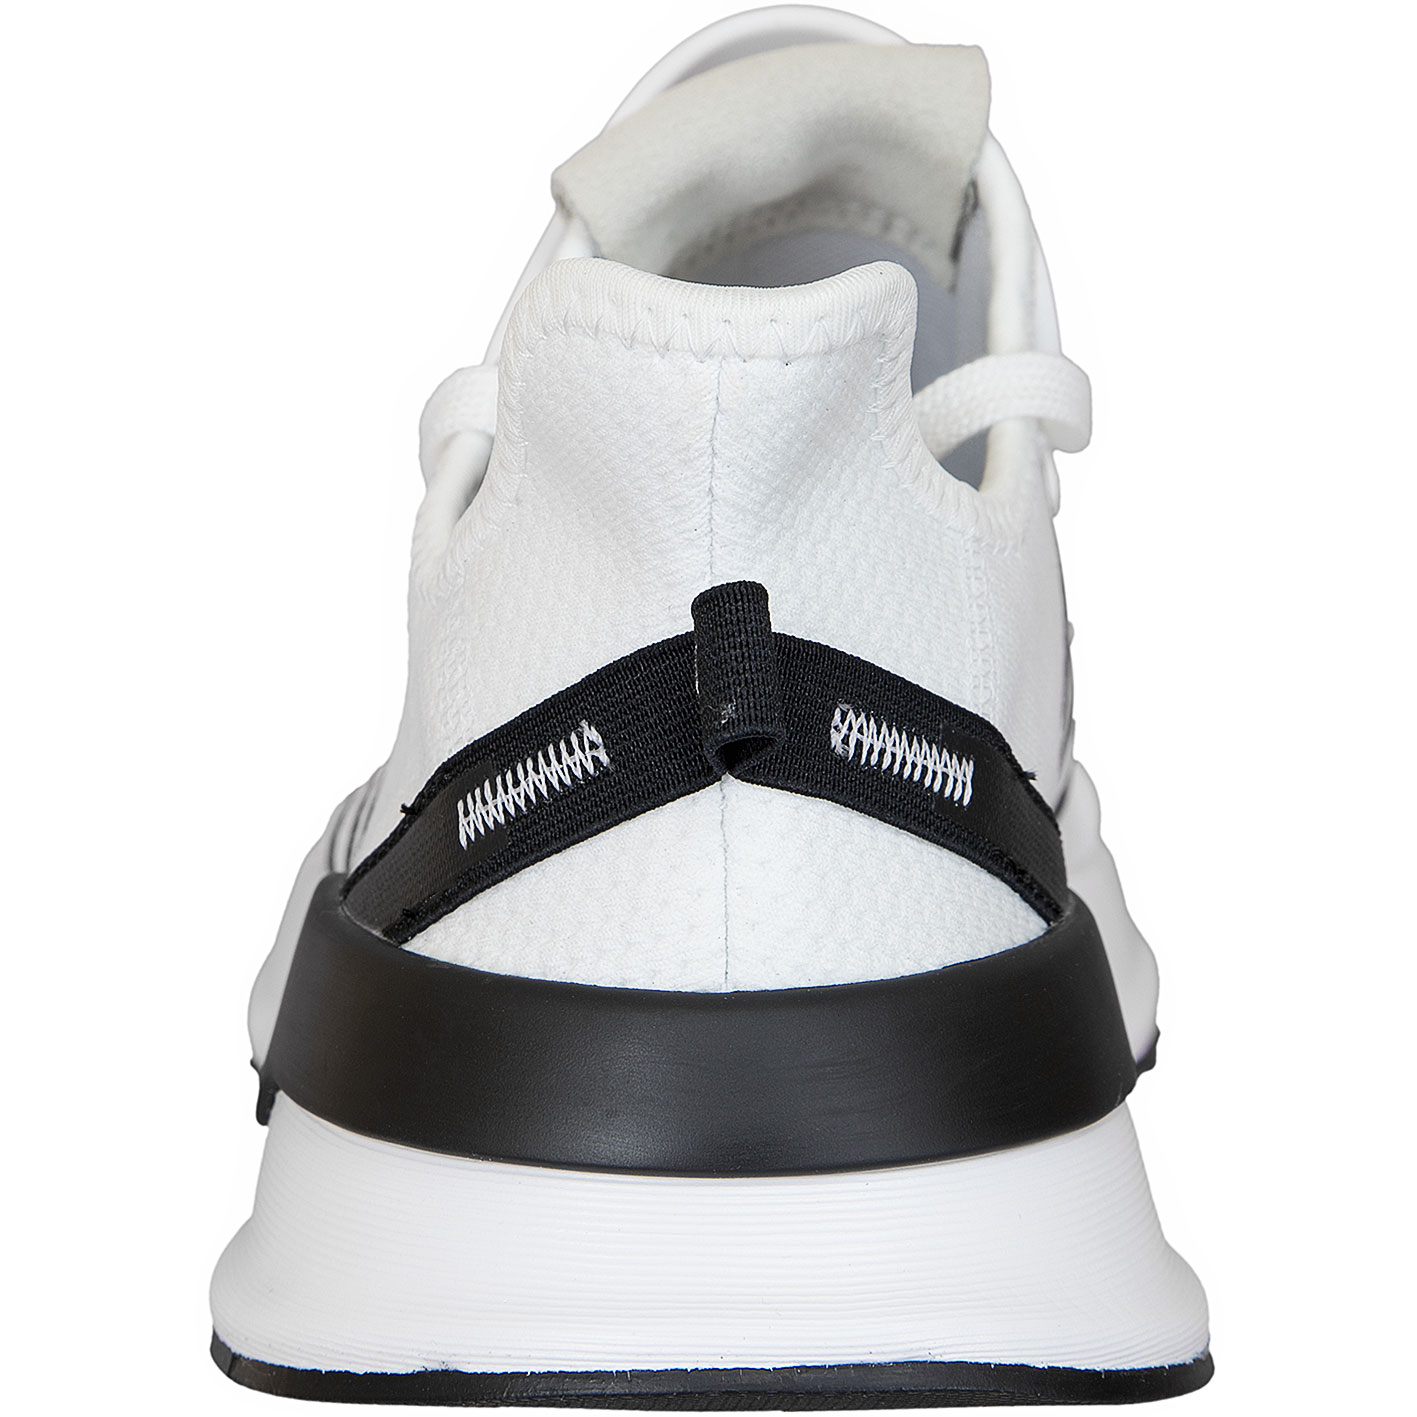 ☆ Adidas Originals Sneaker U_Path Run weiß/schwarz - hier bestellen!